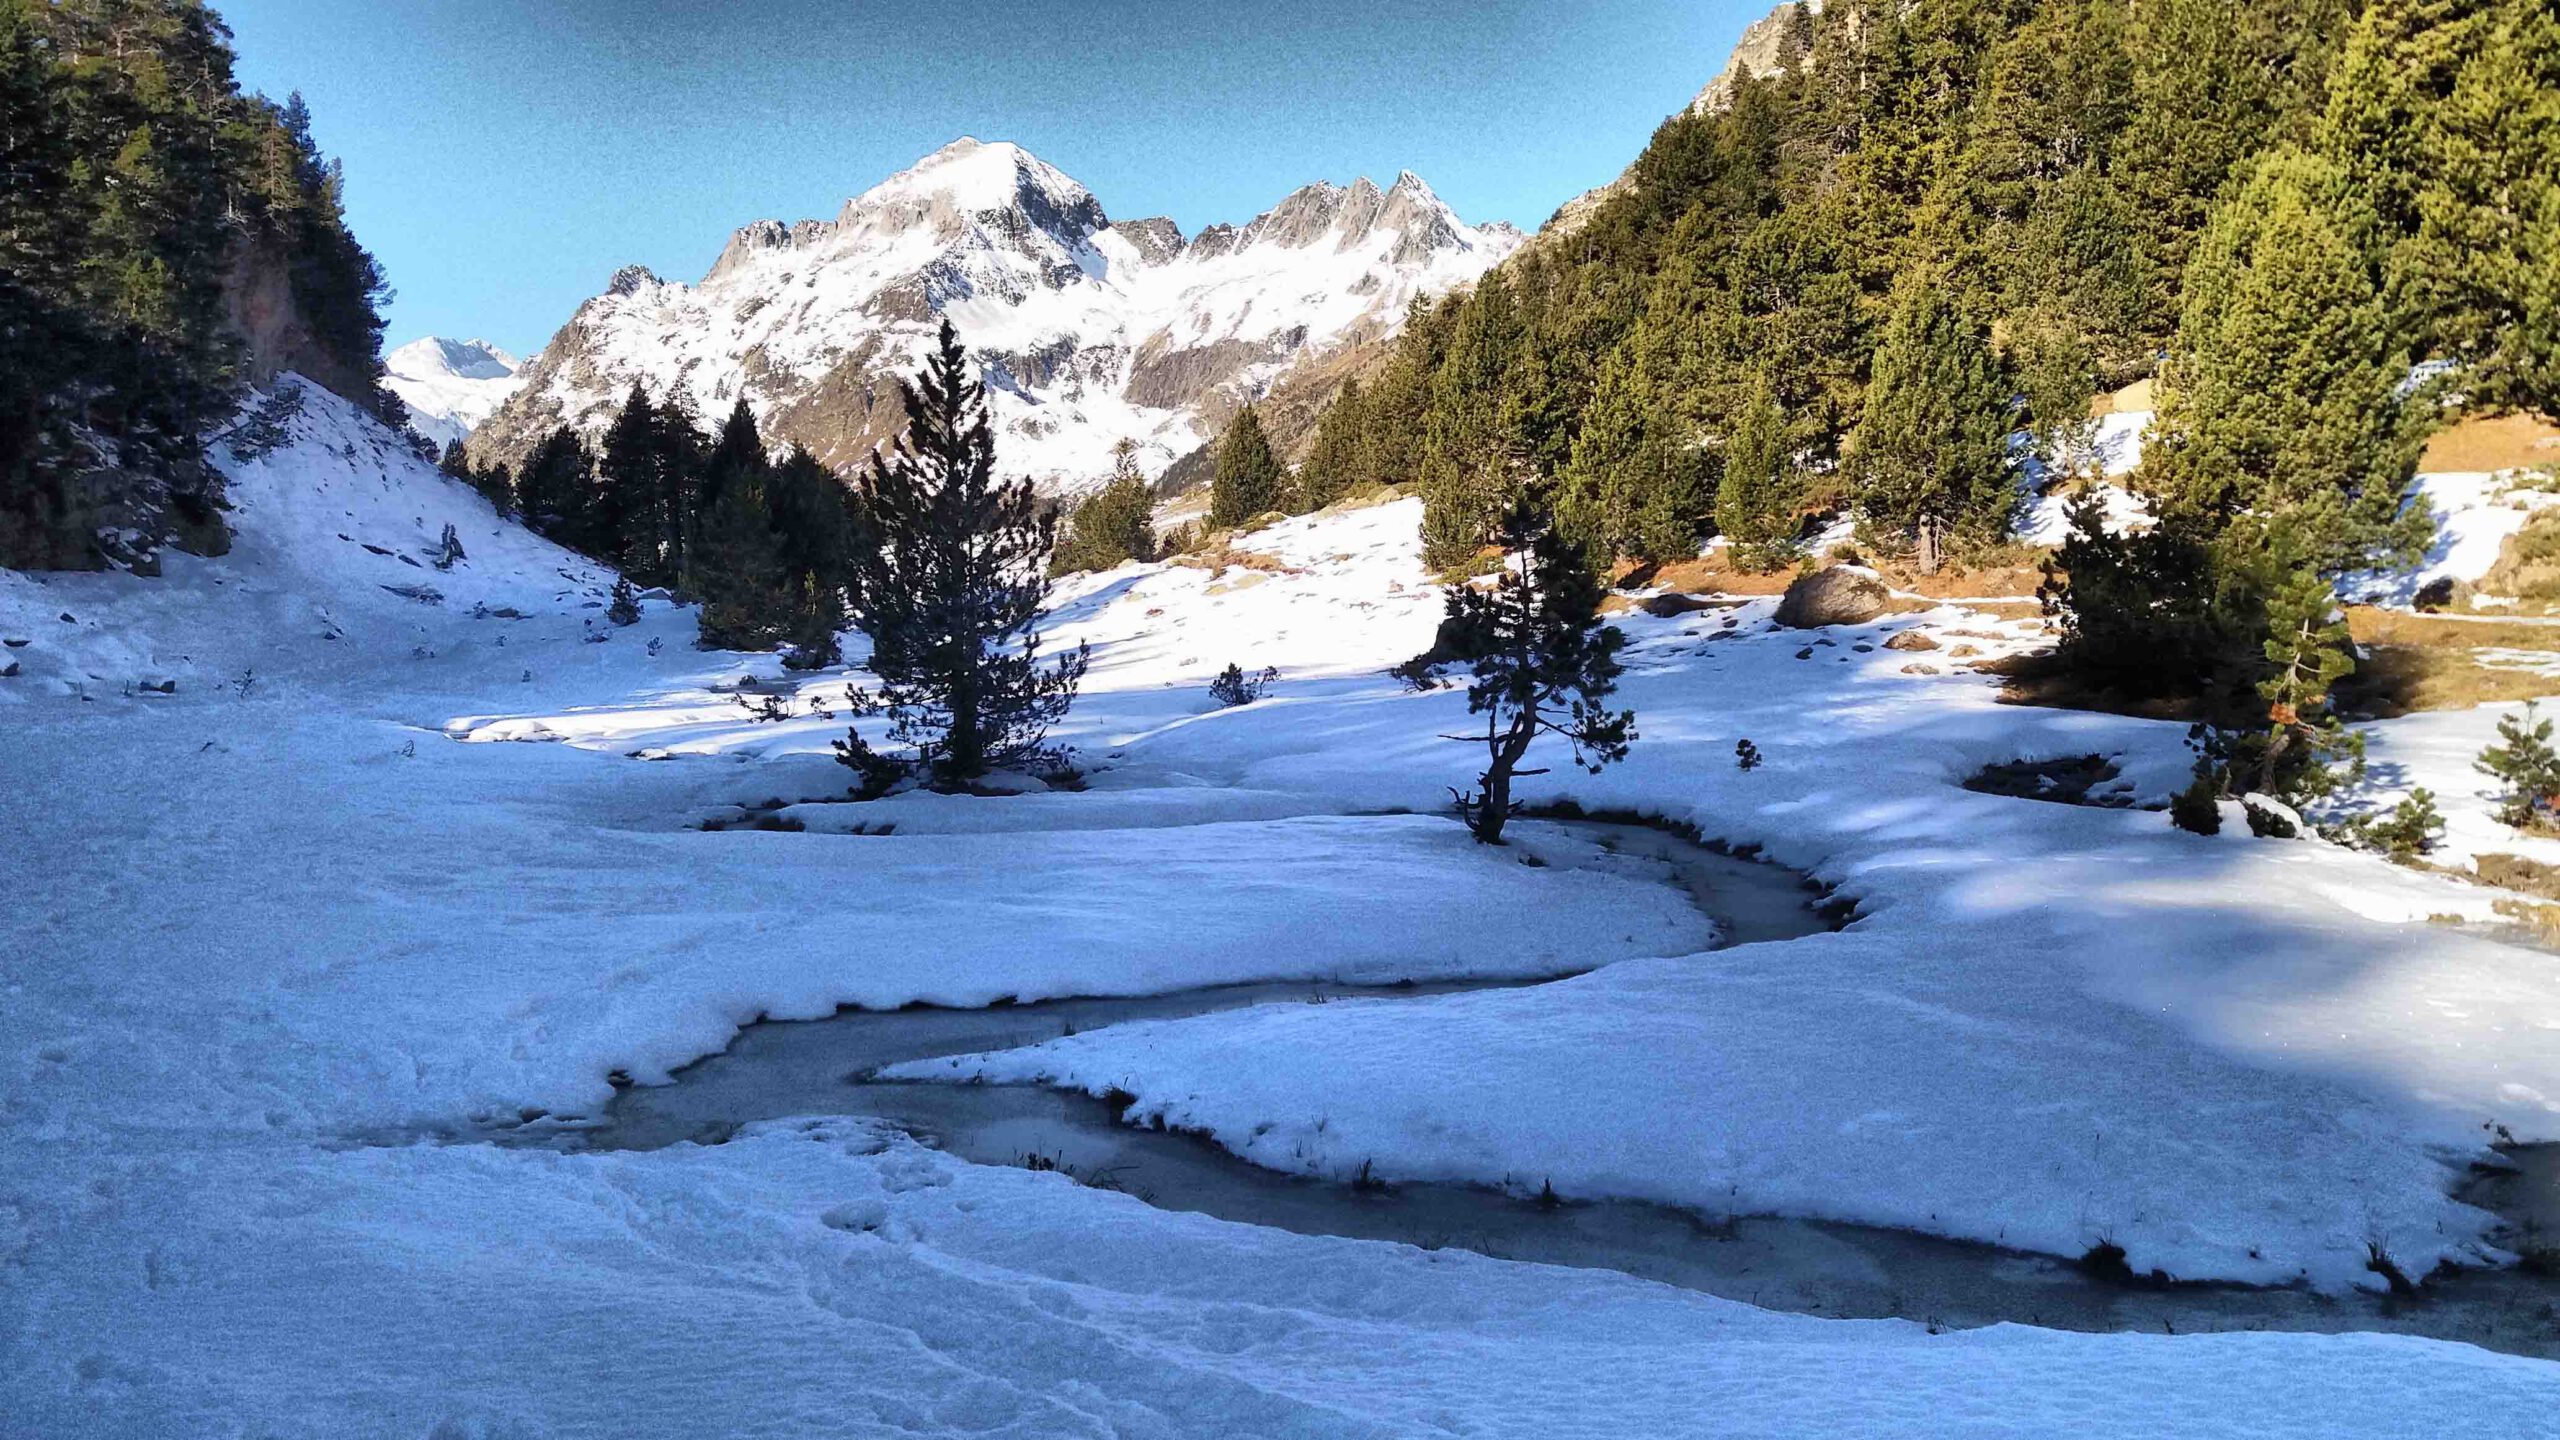 Seis lugares de ensueño para esquiar en Aragón y disfrutar de la nieve